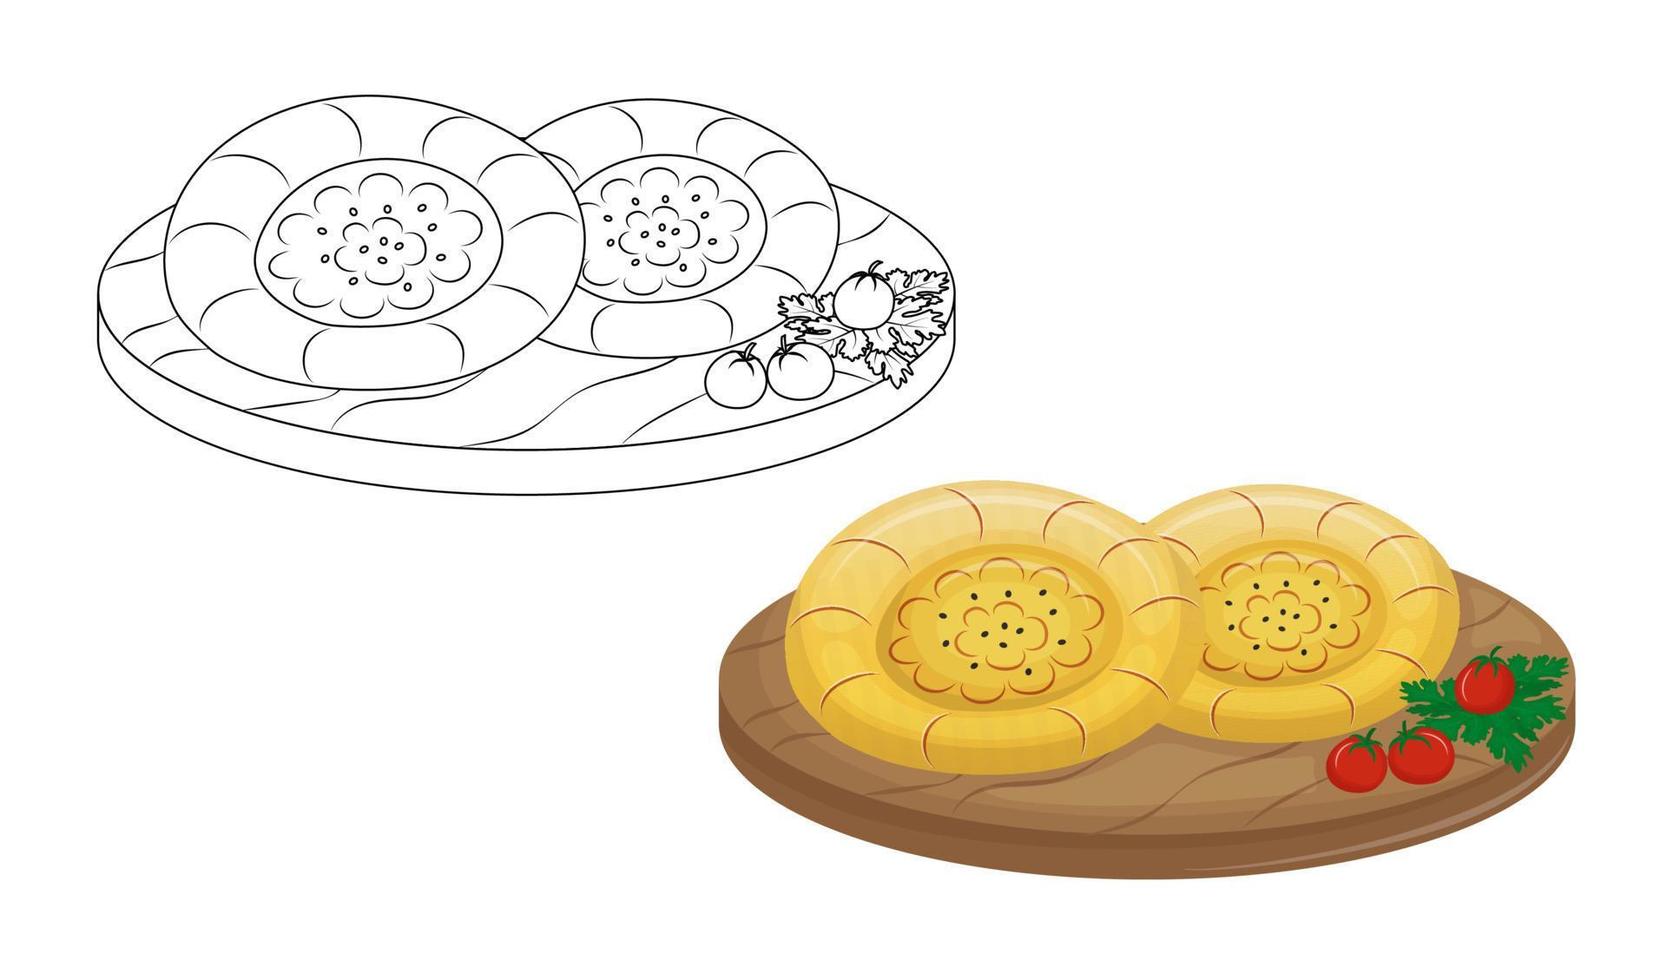 traditioneel centraal Aziatisch brood gebakken in een tandoor. kinderen kleur boek voor elementair school.tandyr flatbread of samosa. vector illustratie.